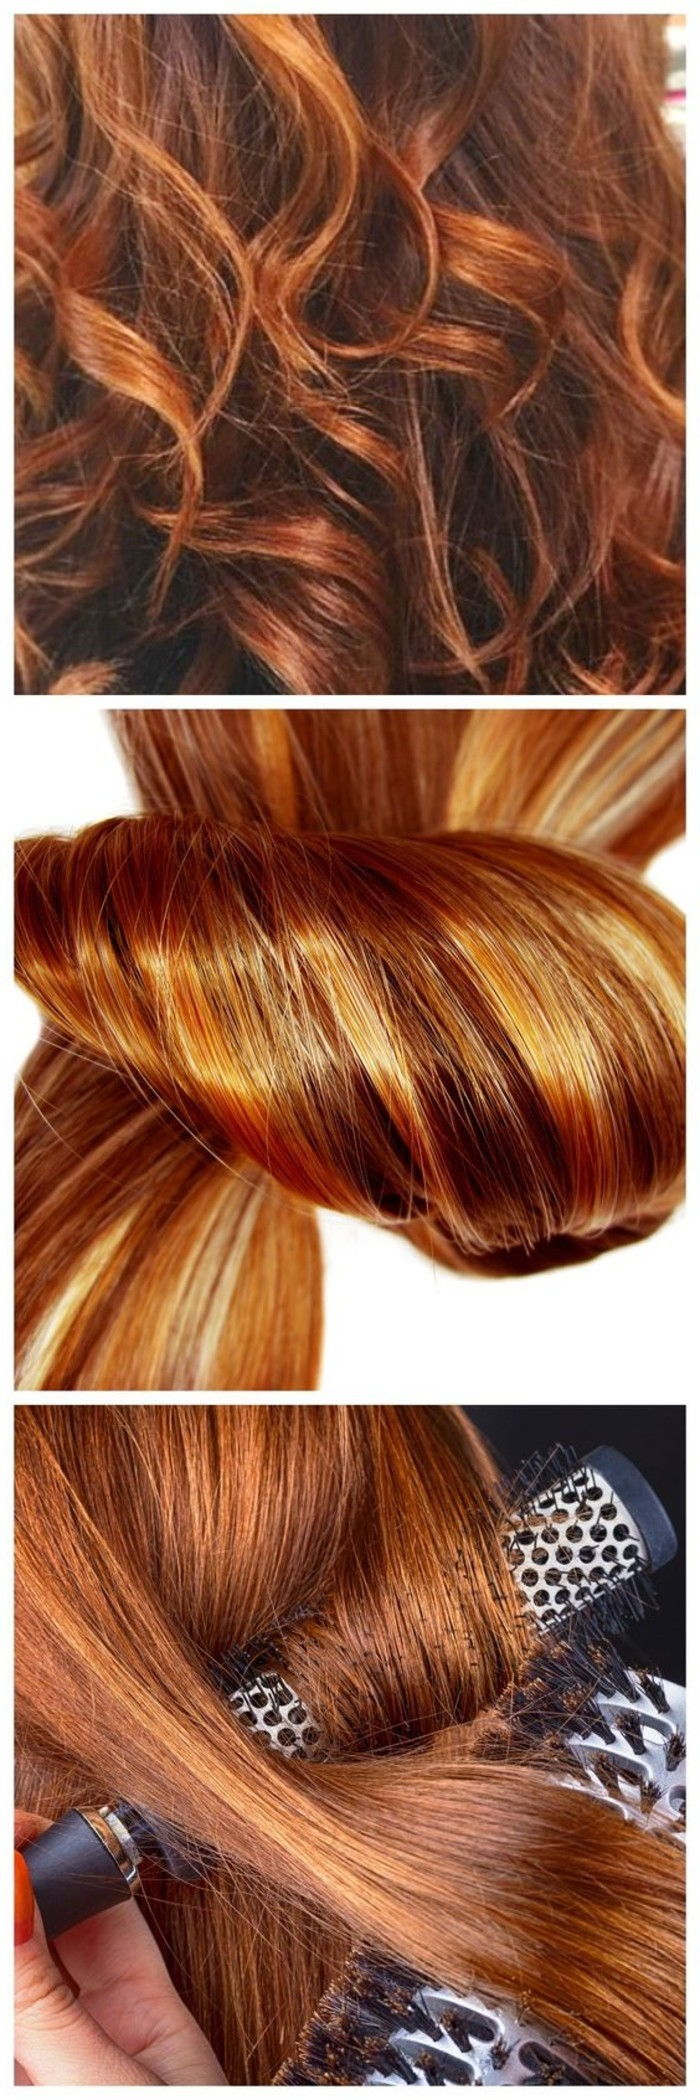 様々な髪型のアイデア - 銅のための髪の色